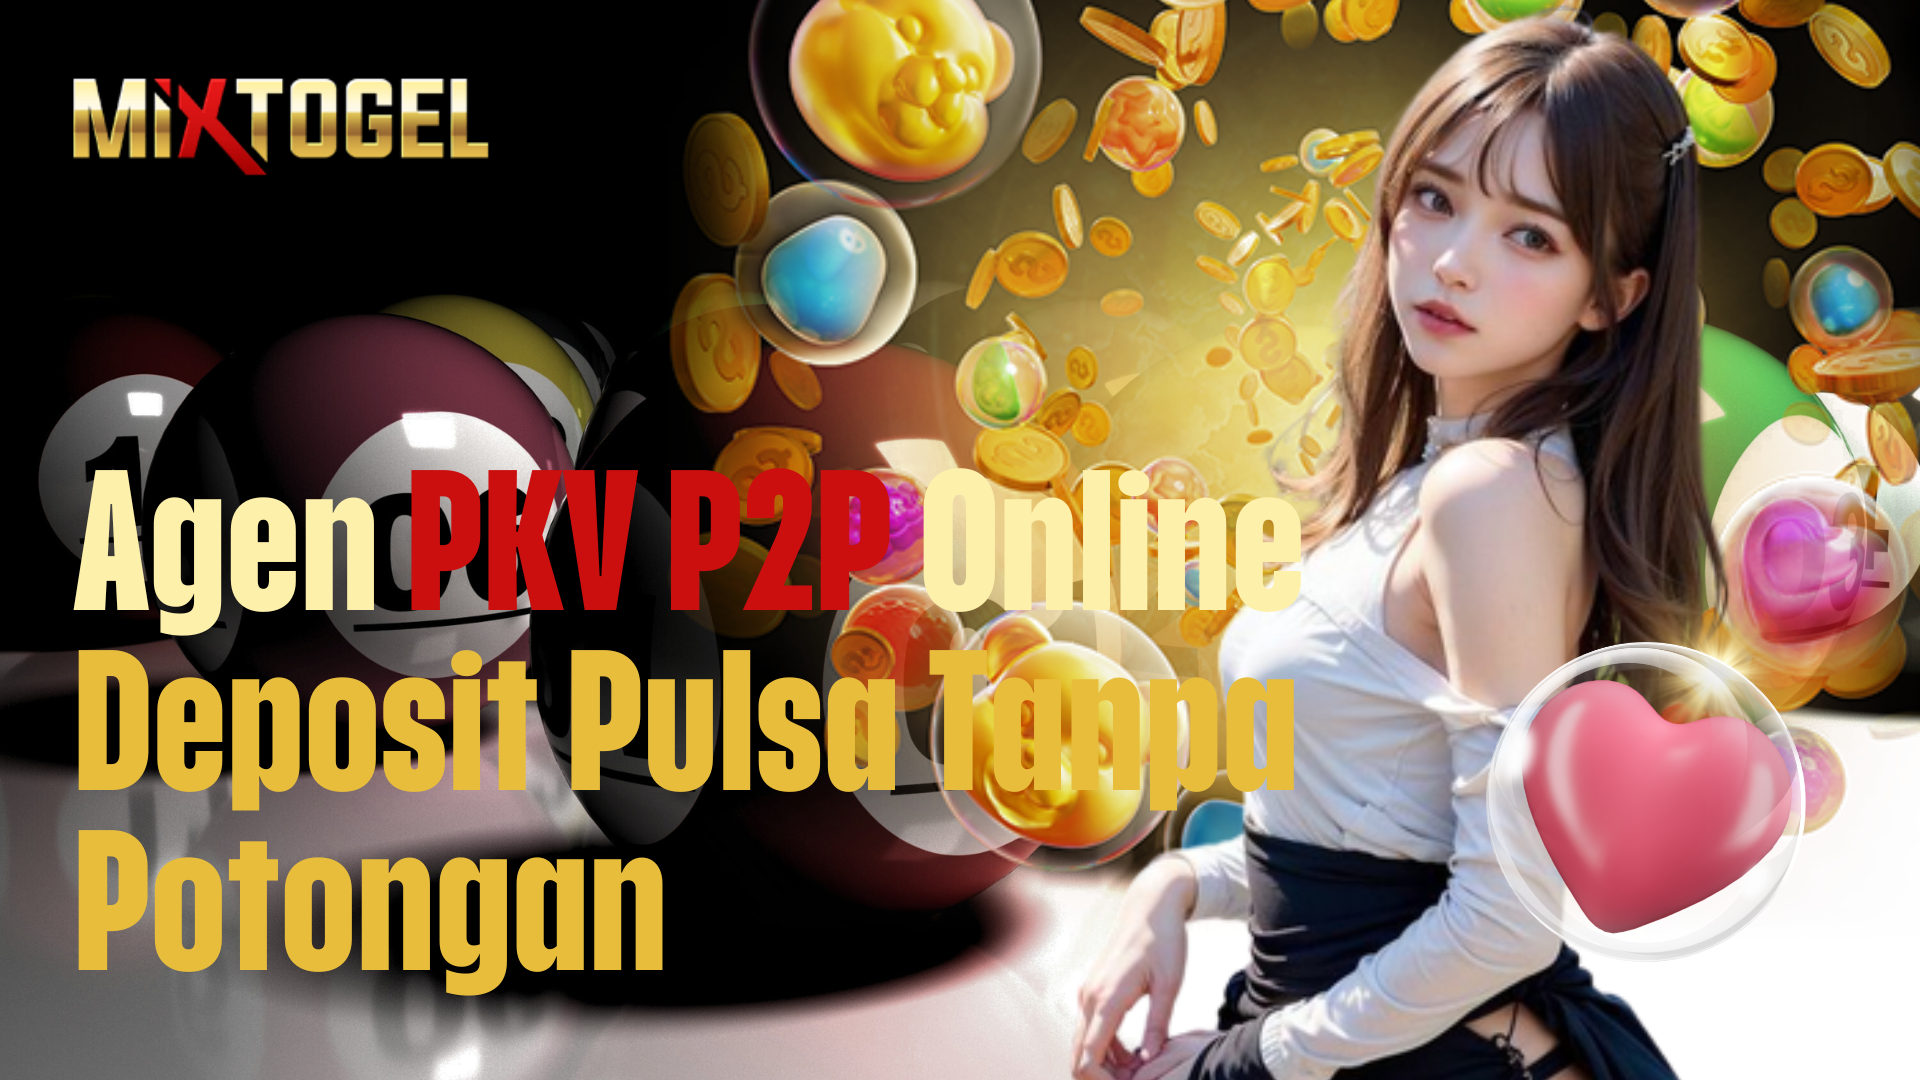 Agen PKV P2P Online Deposit Pulsa Tanpa Potongan